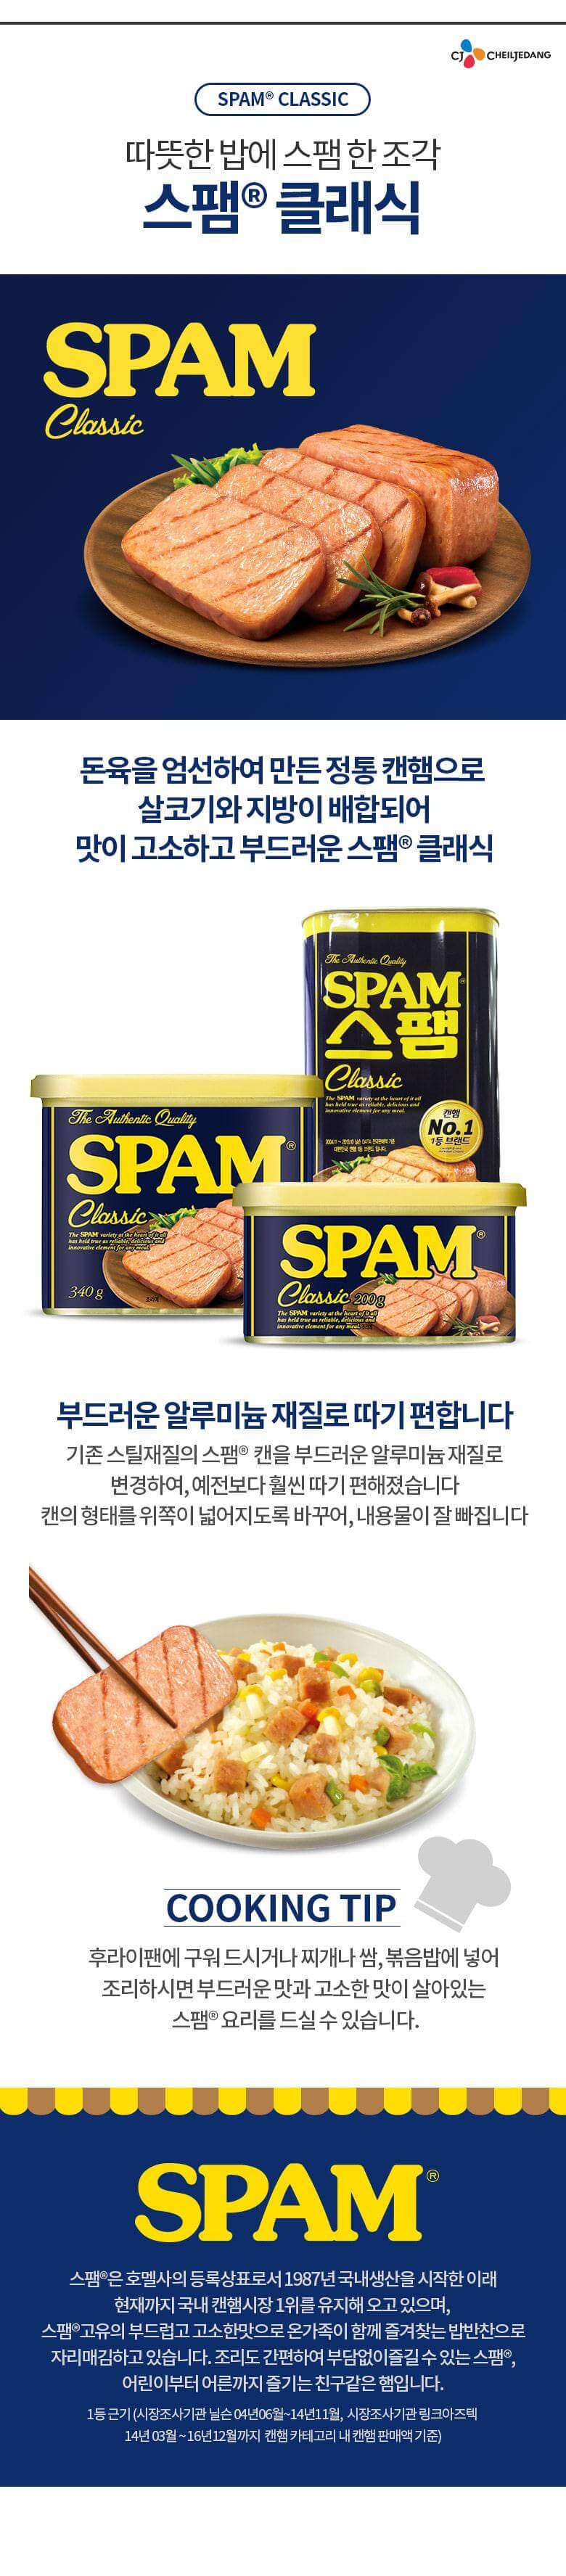 韓國食品-[CJ] 스팸[클래식] 300g 20개